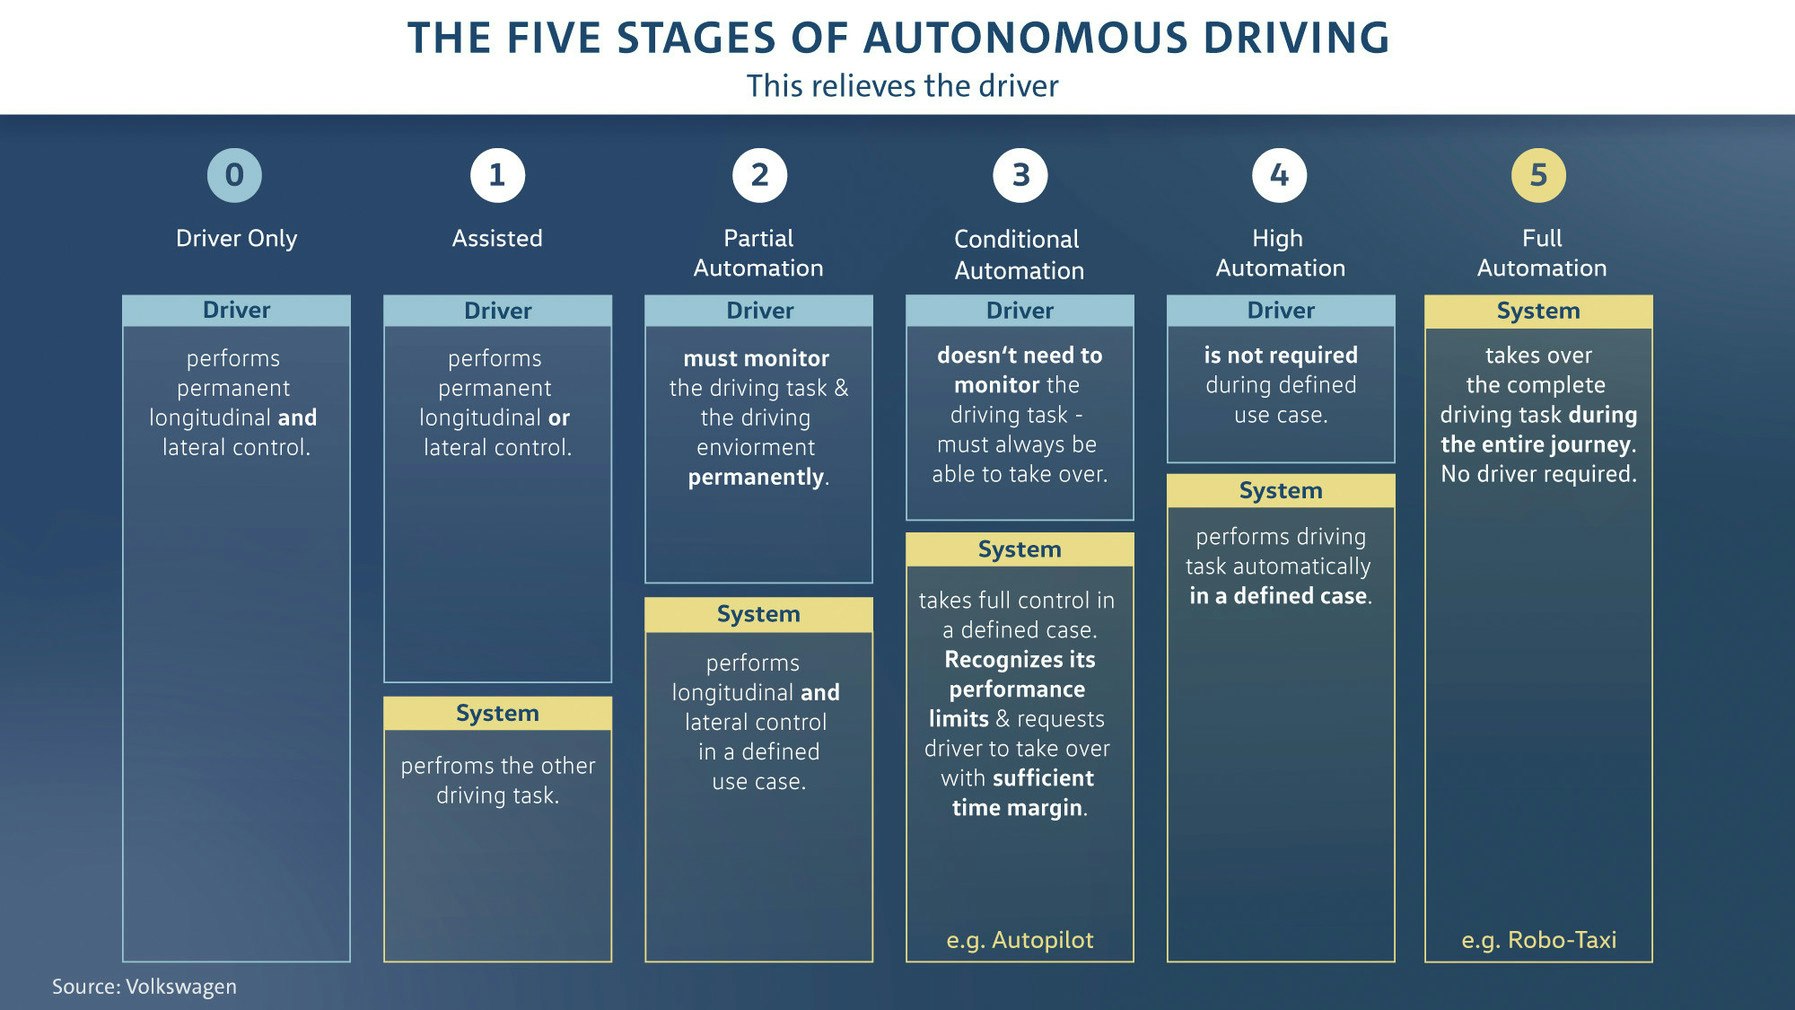 VW autonomous driving chart